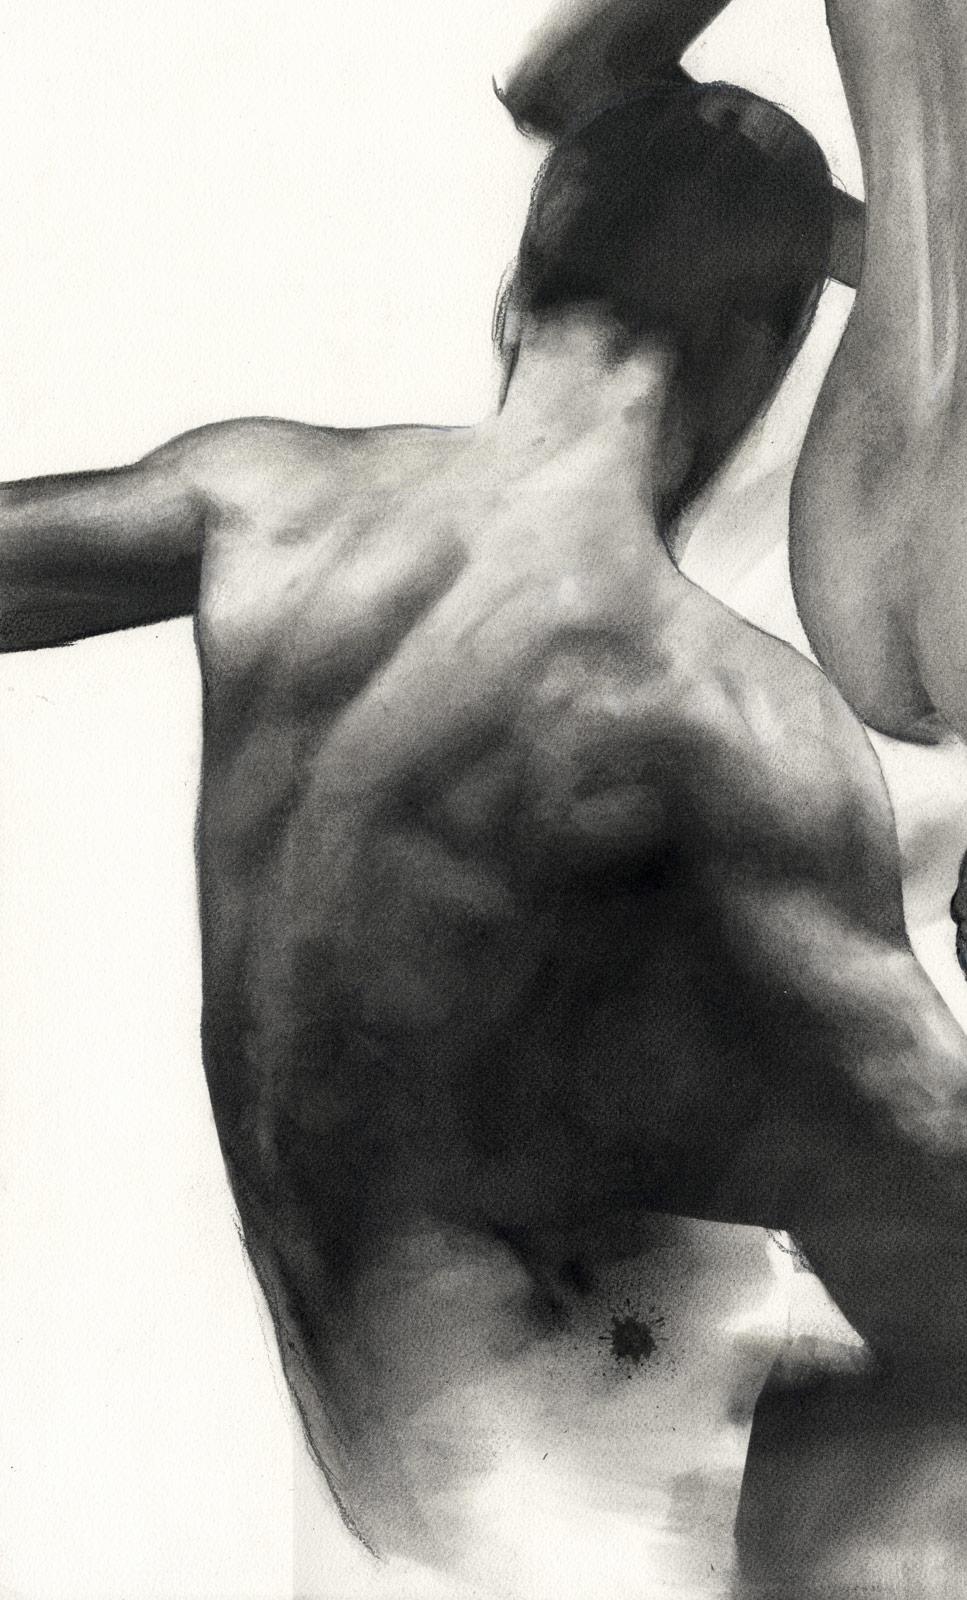 Homme et femme nus (deux désirs et une tension sexuelle) - Moderne Art par Tom Leveritt